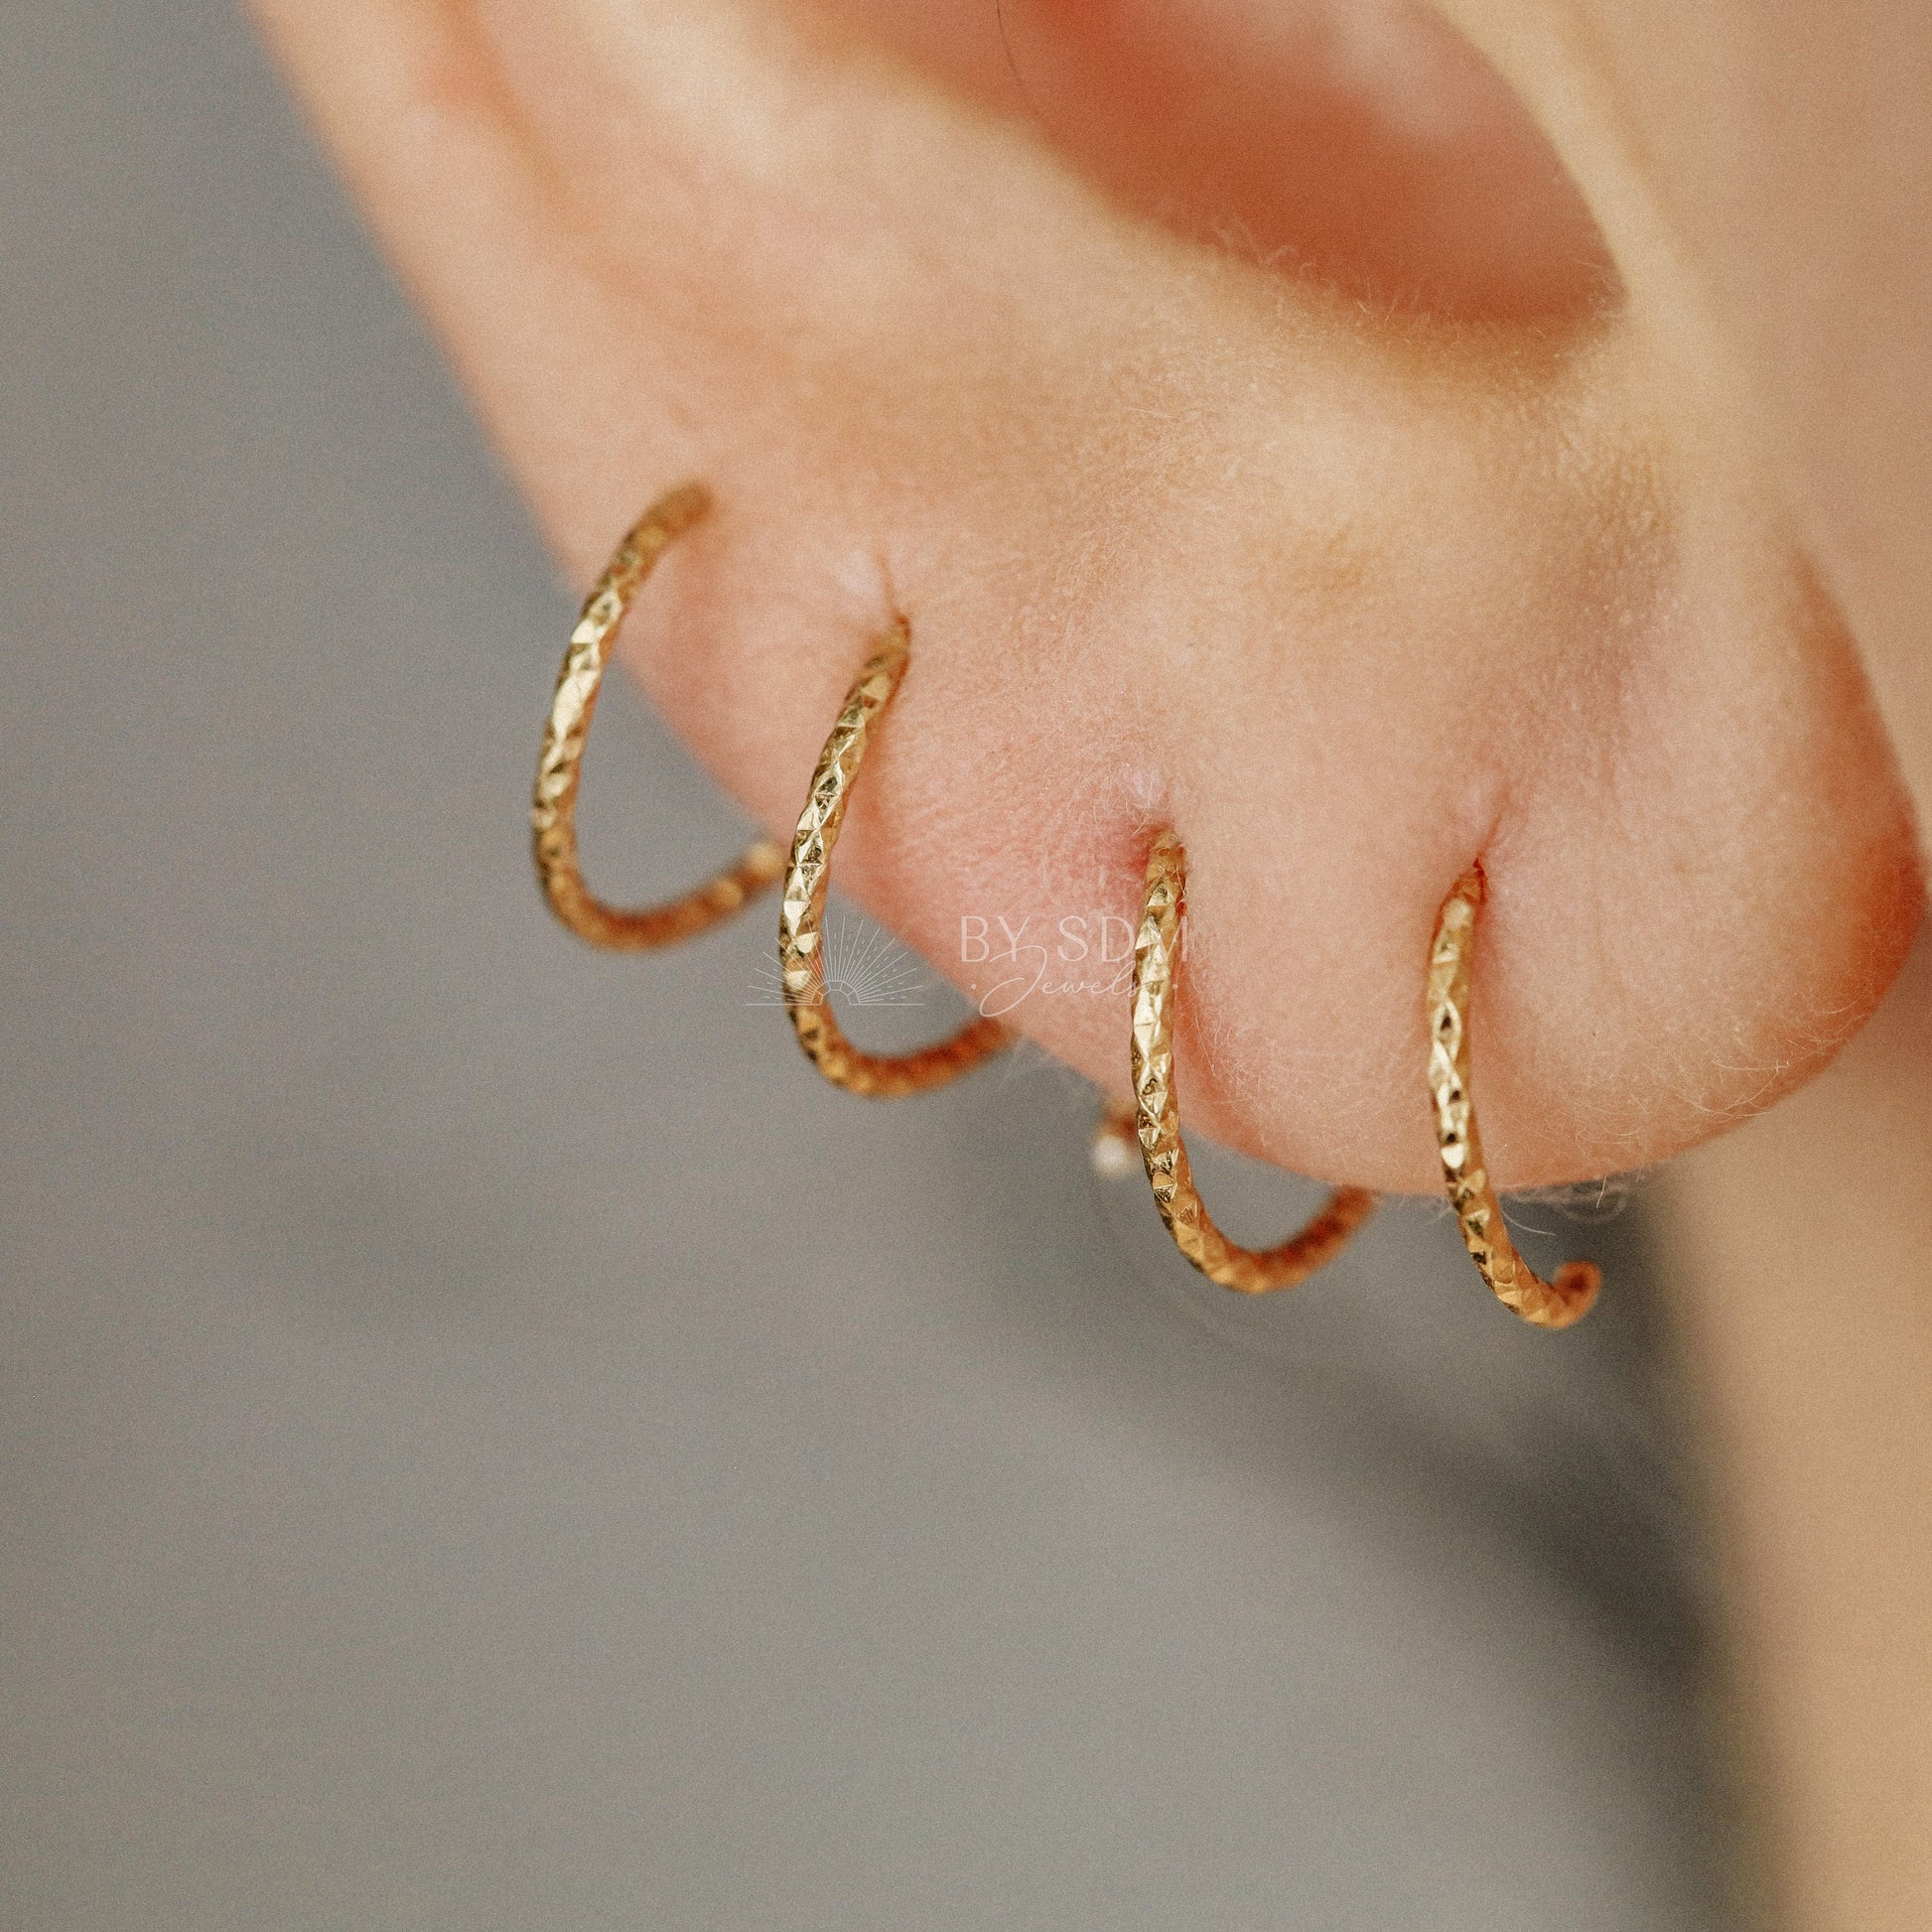 Double Hoop Earrings Spiral Loop Earrings Threader Hoops Minimalist Earrings Spiral Open Hoop Earrings 18k Gold plated Diamond Cut Earrings